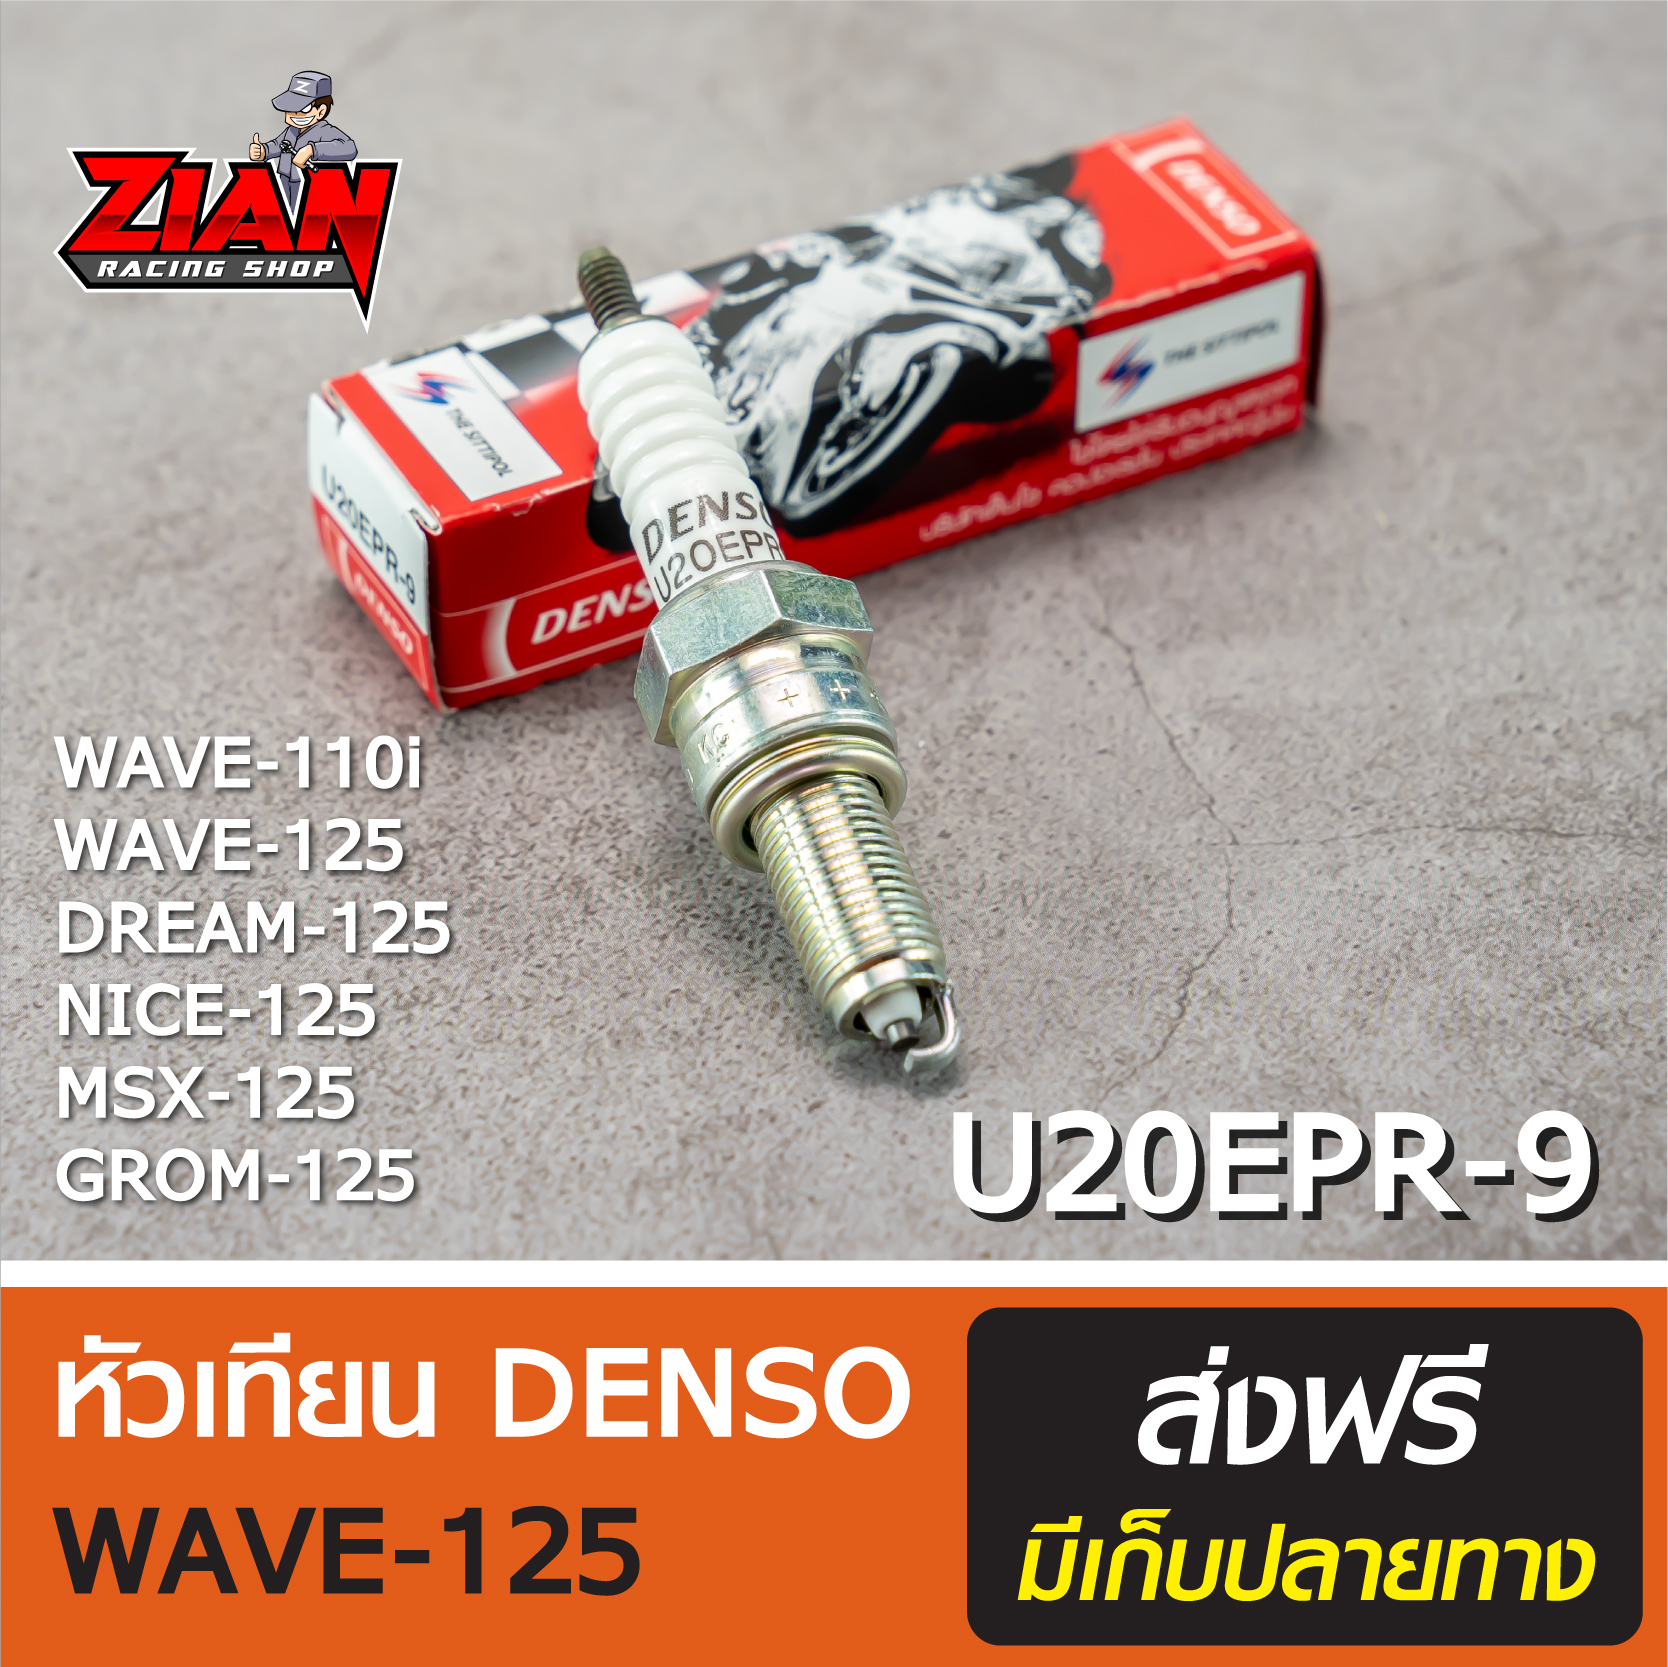 หัวเทียน DENSO รหัส U20EPR-9 / สำหรับรถ WAVE-110i/125/125i, DREAM-125, NICE-125, MSX-125, GROM-125 (เวฟ-110i/125/125i, ดรีม-125) ของแท้ !!! ส่งฟรี COD เก็บปลายทาง